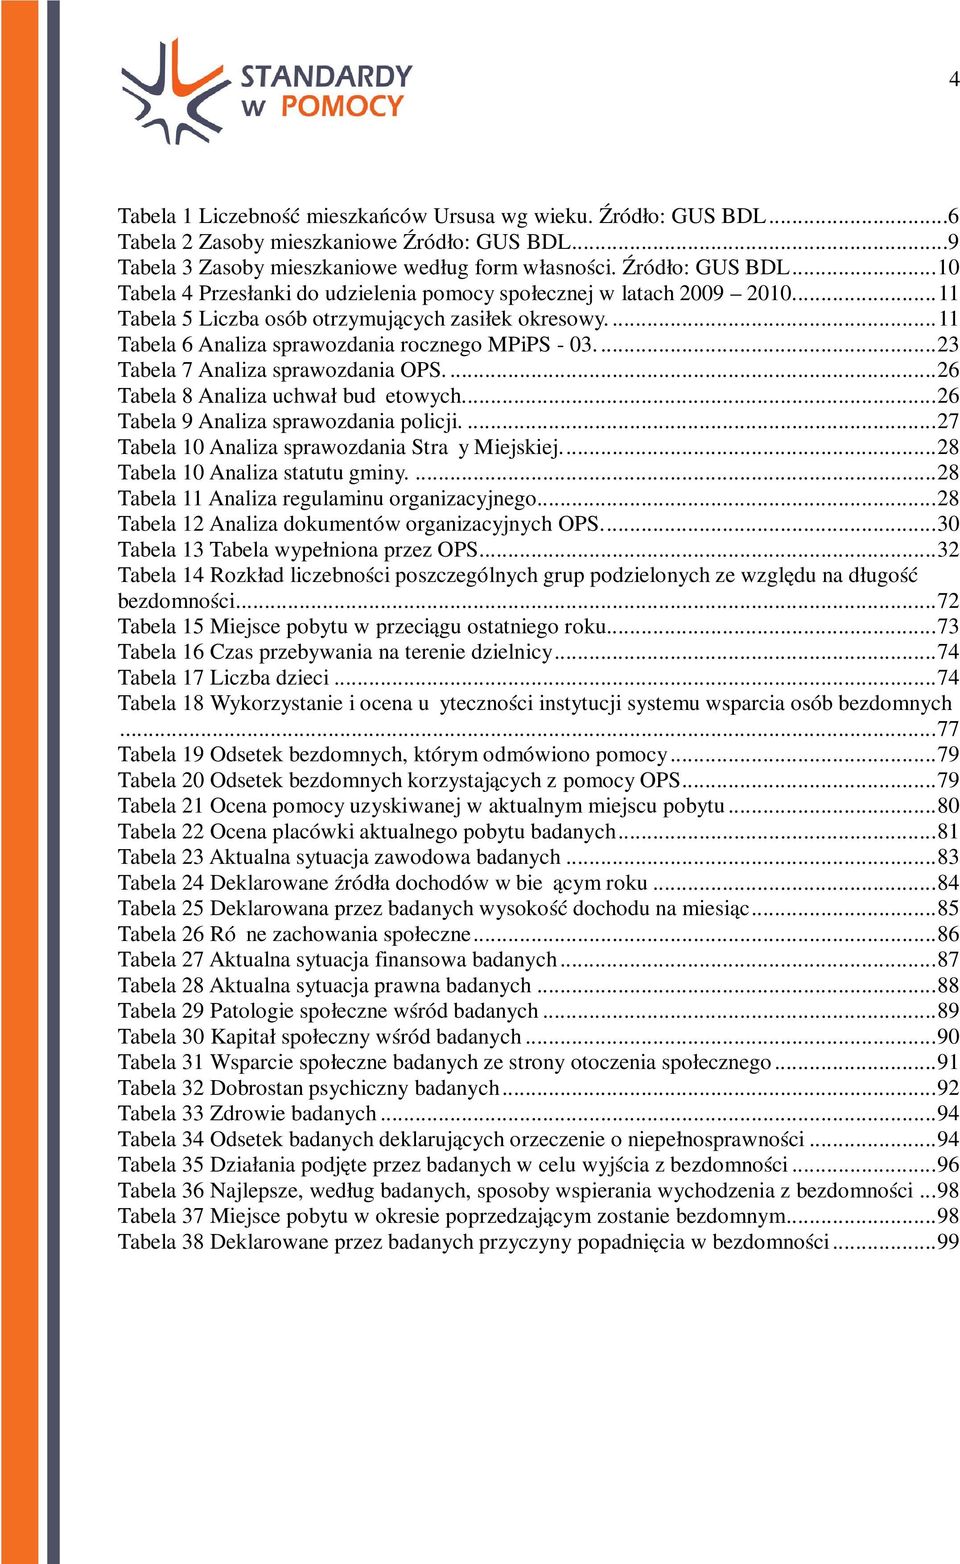 .. 26 Tabela 9 Analiza sprawozdania policji.... 27 Tabela 10 Analiza sprawozdania Straży Miejskiej.... 28 Tabela 10 Analiza statutu gminy.... 28 Tabela 11 Analiza regulaminu organizacyjnego.